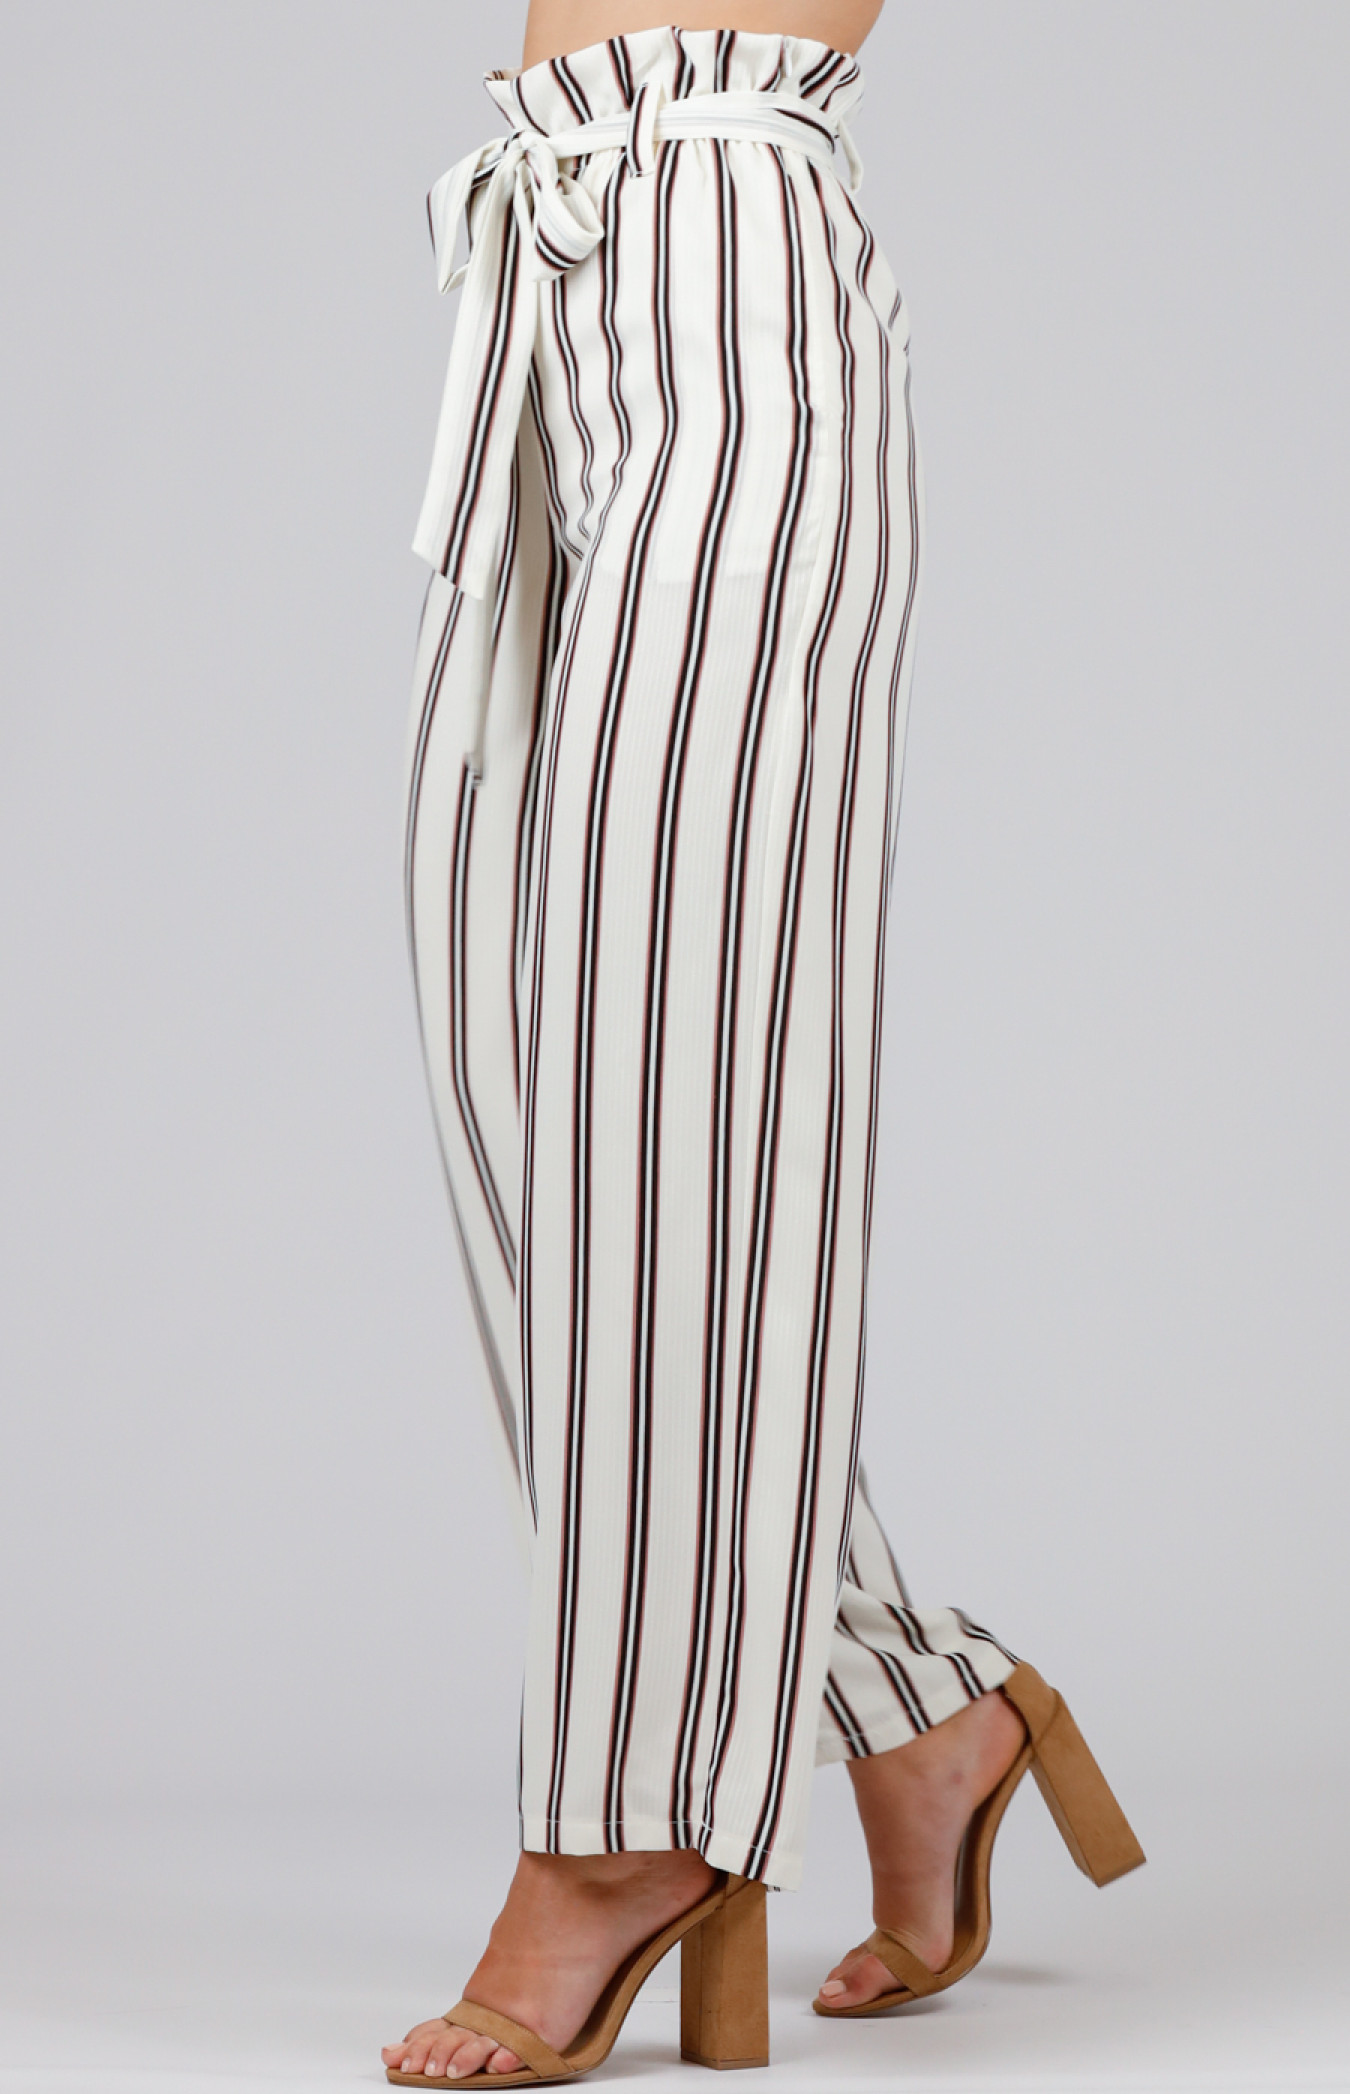 BODEN LADIES St Ives Paperbag Pants Cobalt Stripe T0287 RRP £70 SIZE UK 20L  | eBay